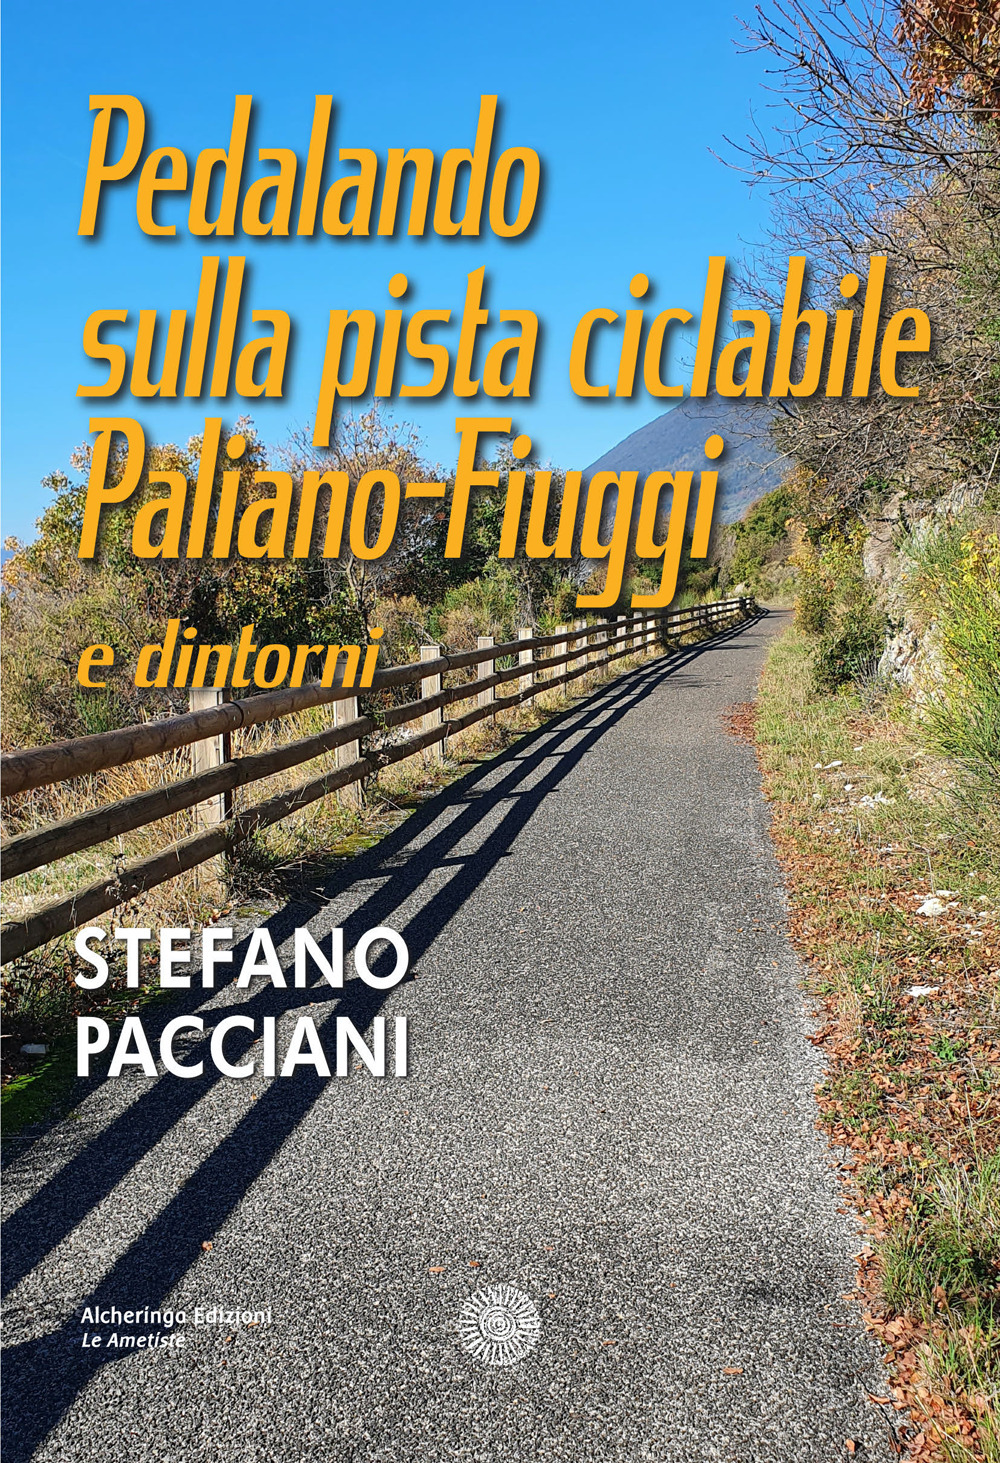 Pedalando sulla pista ciclabile Paliano-Fiuggi e dintorni